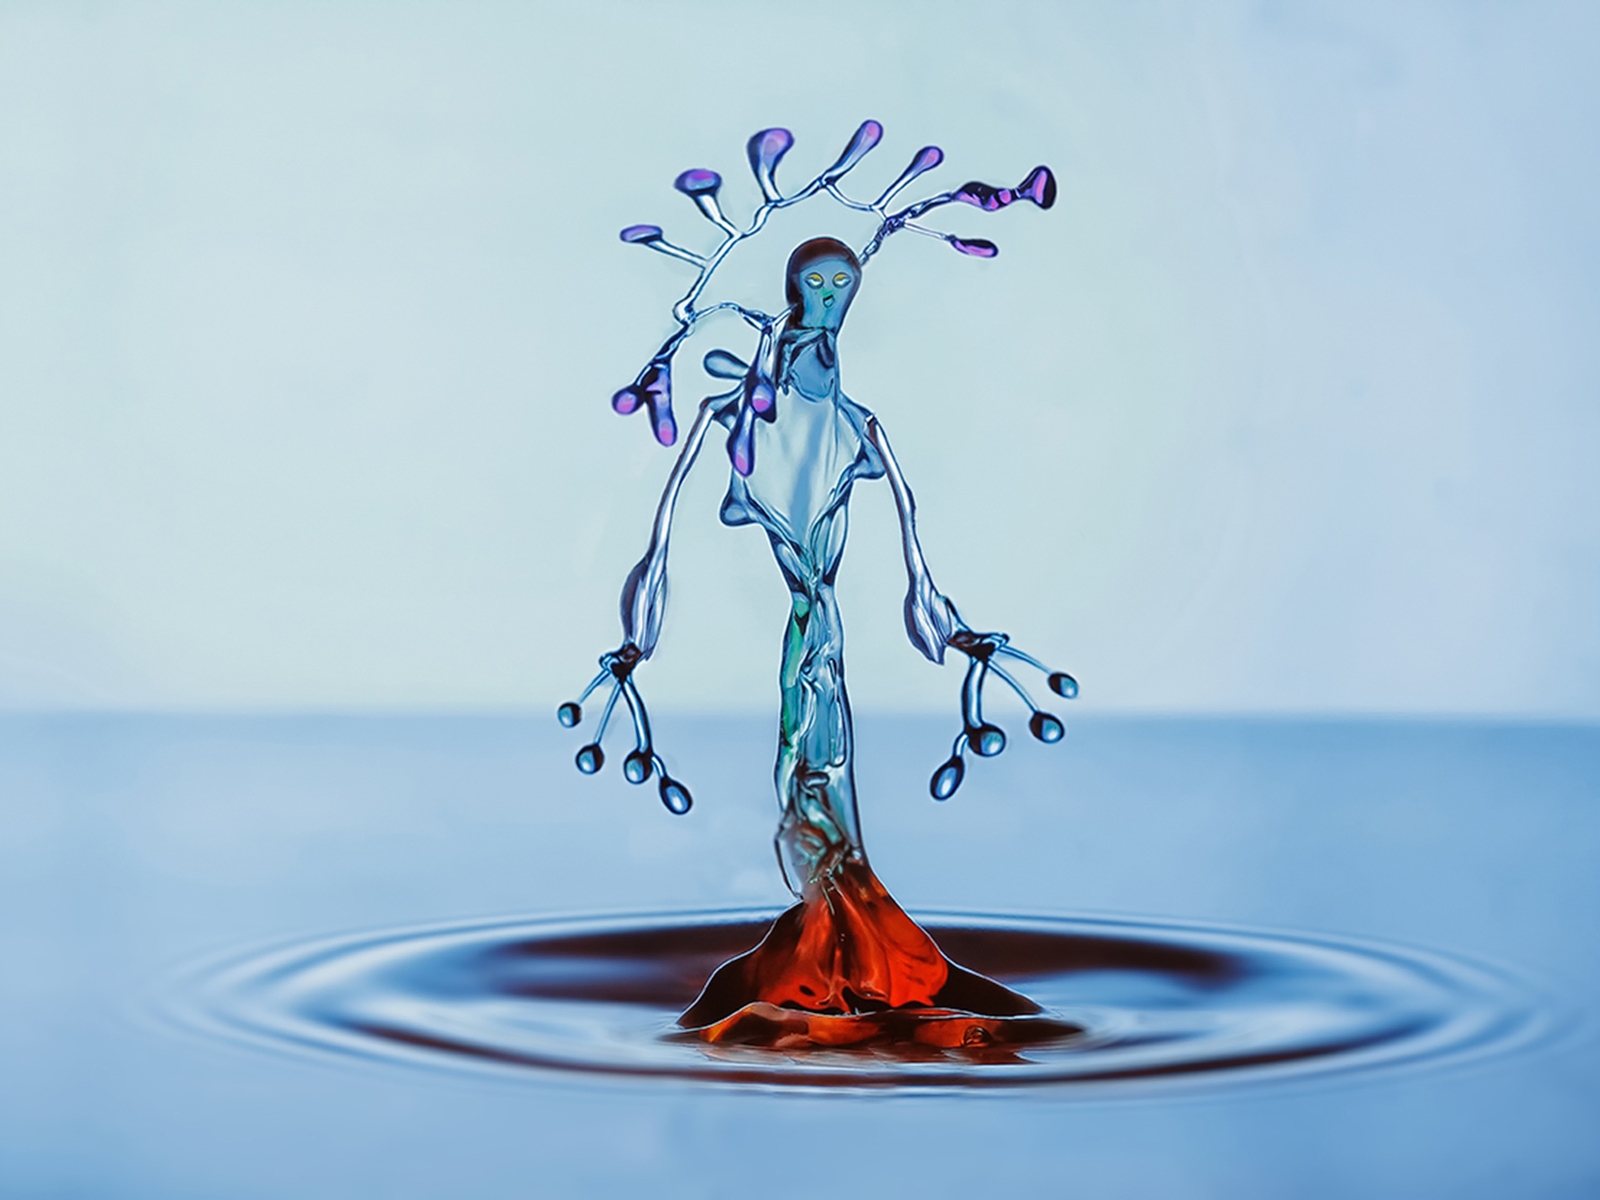 Water Splash Figurine for 1600 x 1200 resolution